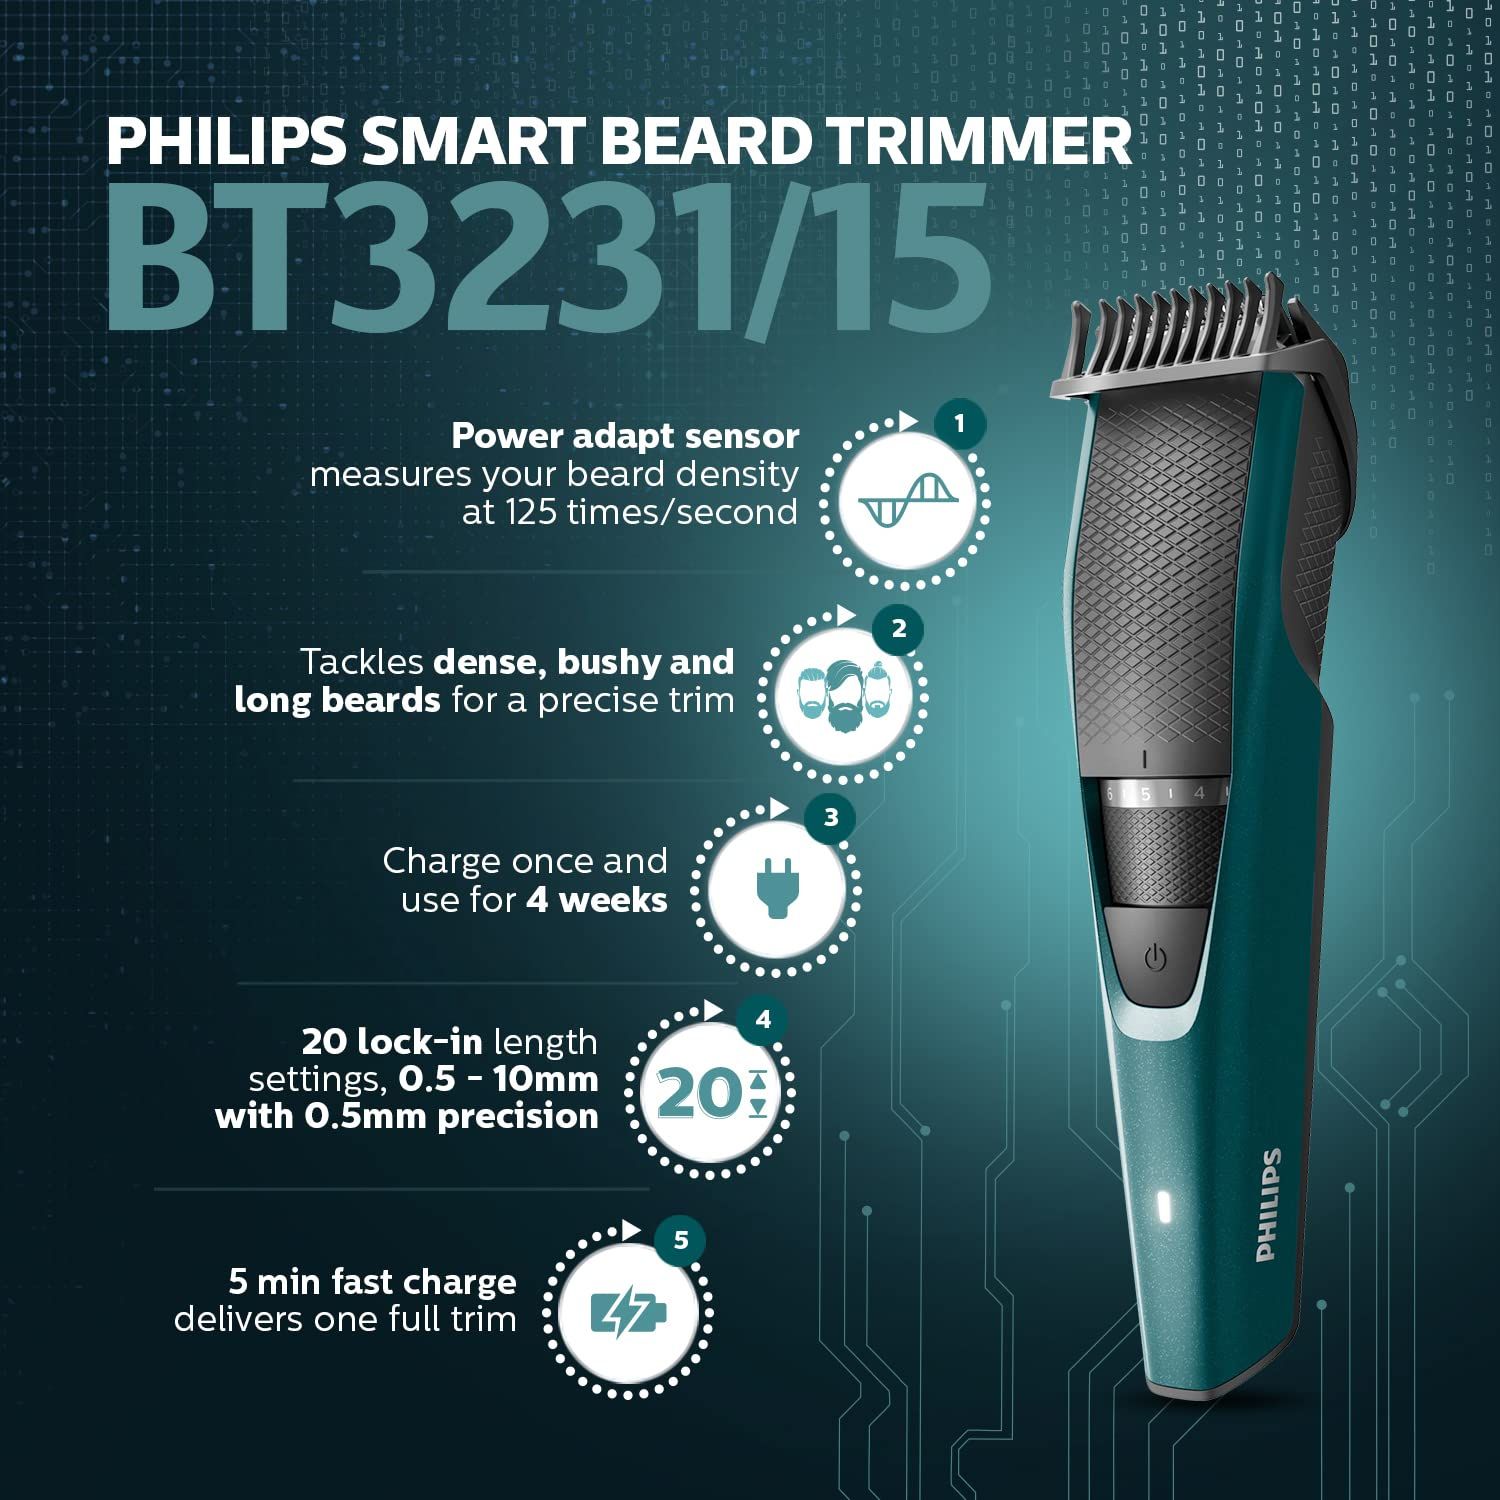 Philips BT323115 Beard Trimmer